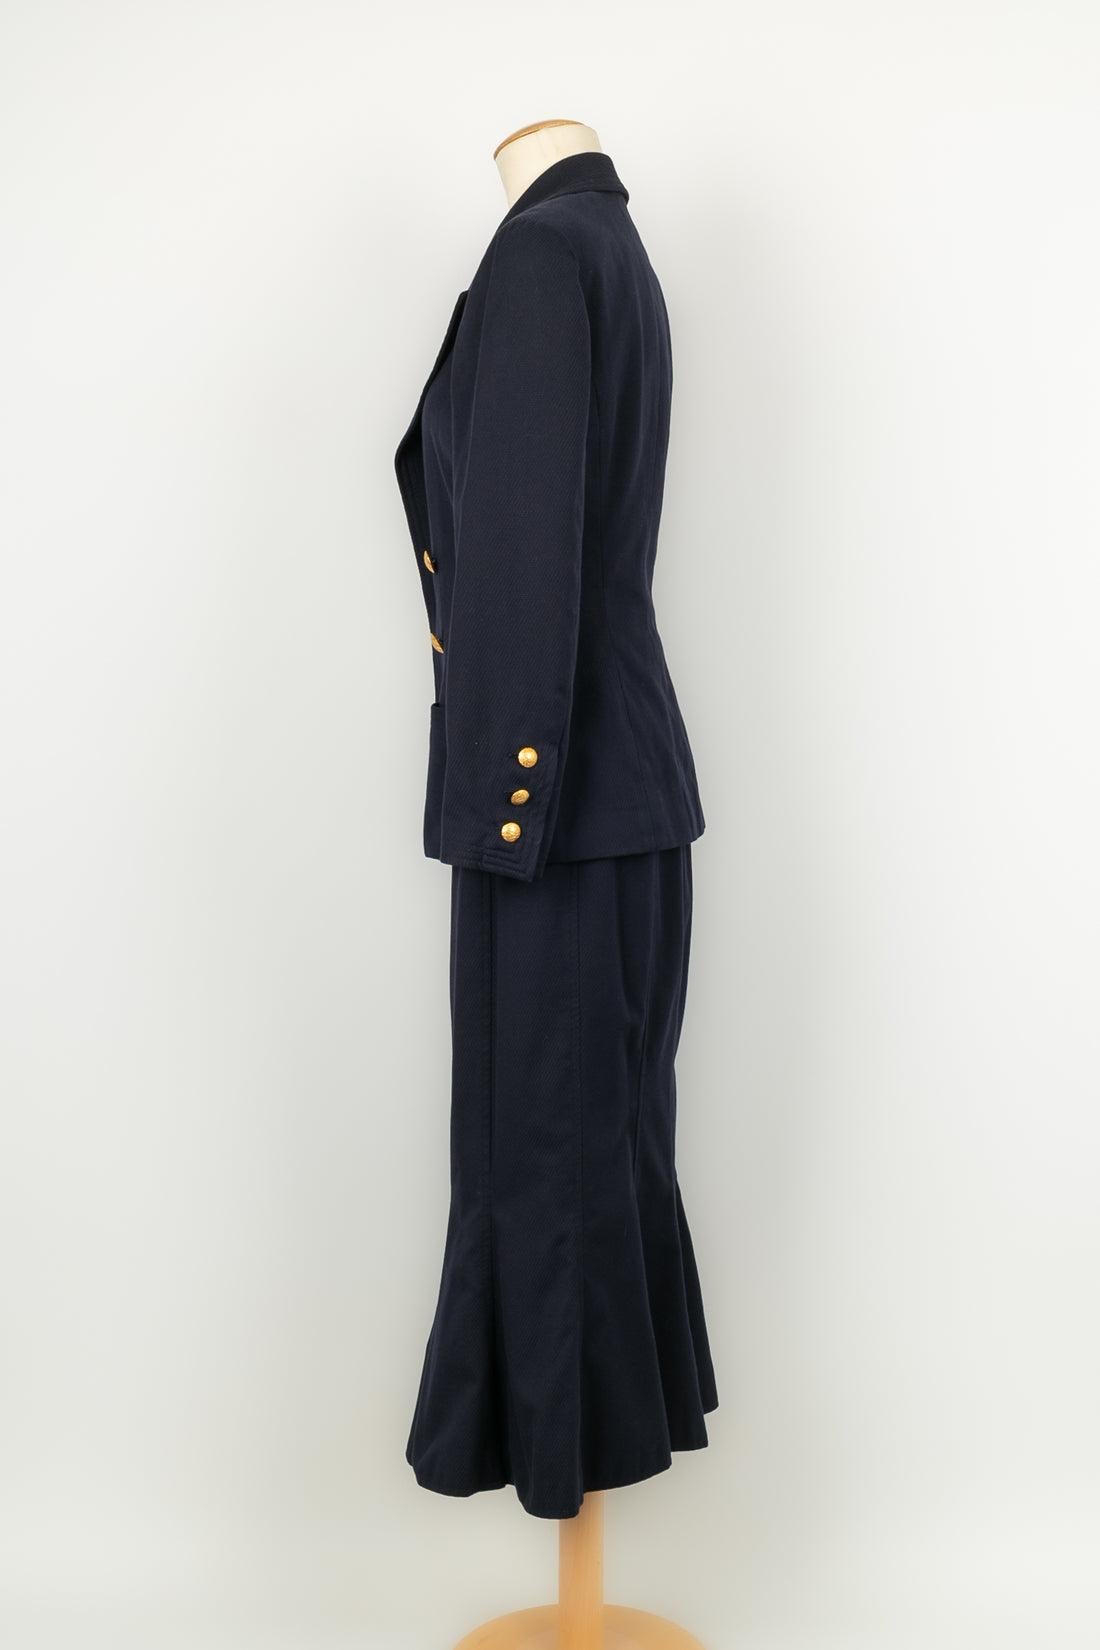 Chanel - (Made in France) Ensemble composé d'une veste bijou et d'une jupe longue en coton et doublée de soie. Taille 40FR. Collection printemps-été 1993.

Informations complémentaires : 
Dimensions : Veste : Largeur des épaules : 40 cm, Longueur